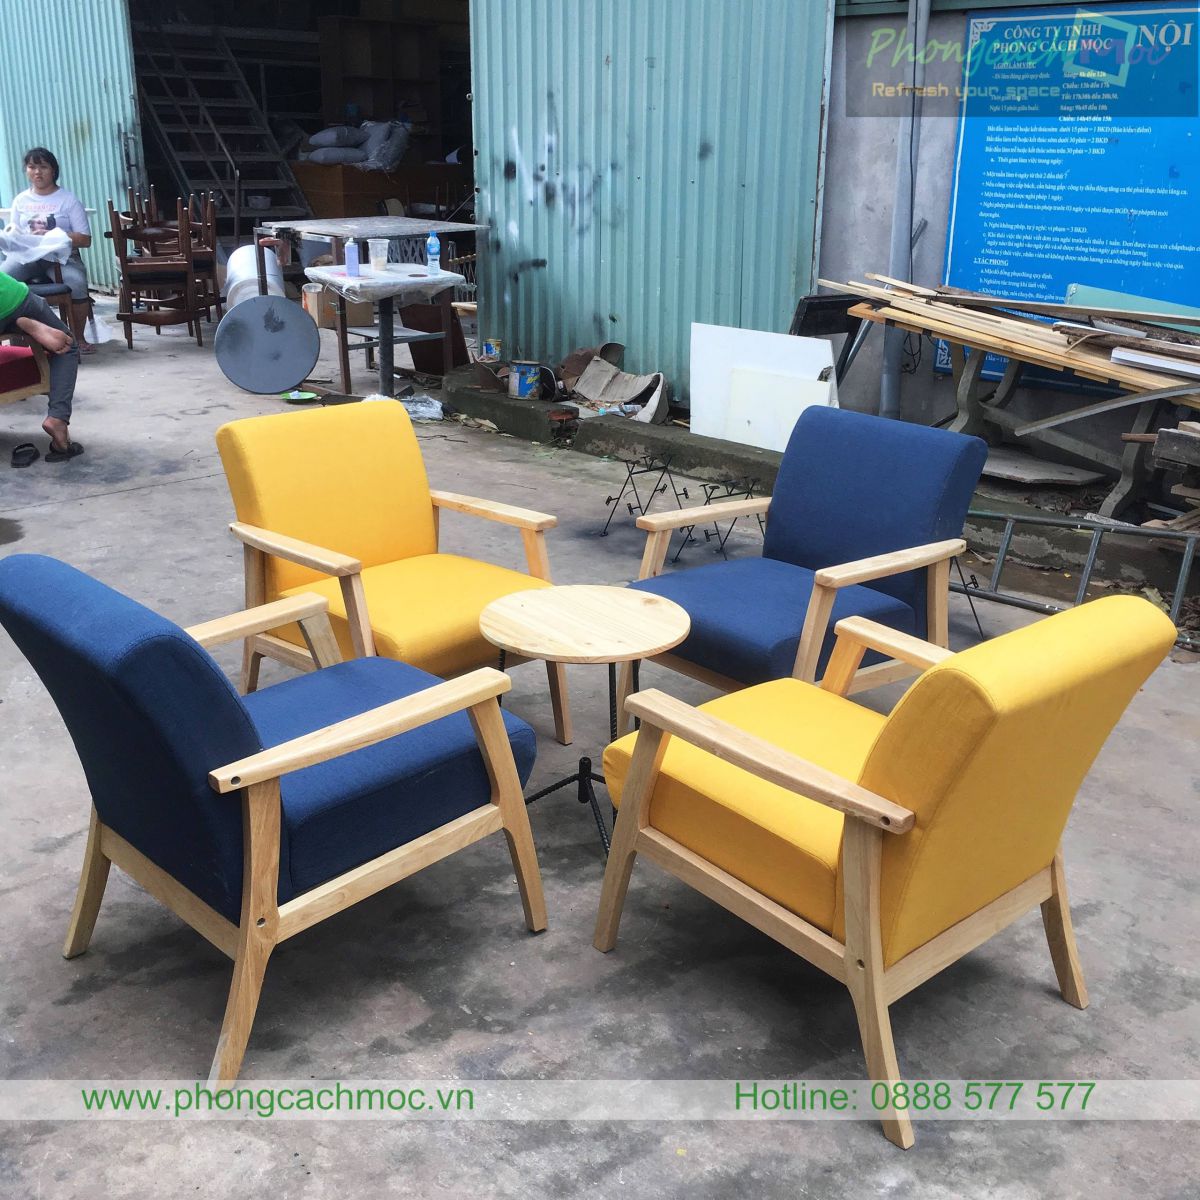 mẫu ghế sofa mf70 với màu xanh và vàng